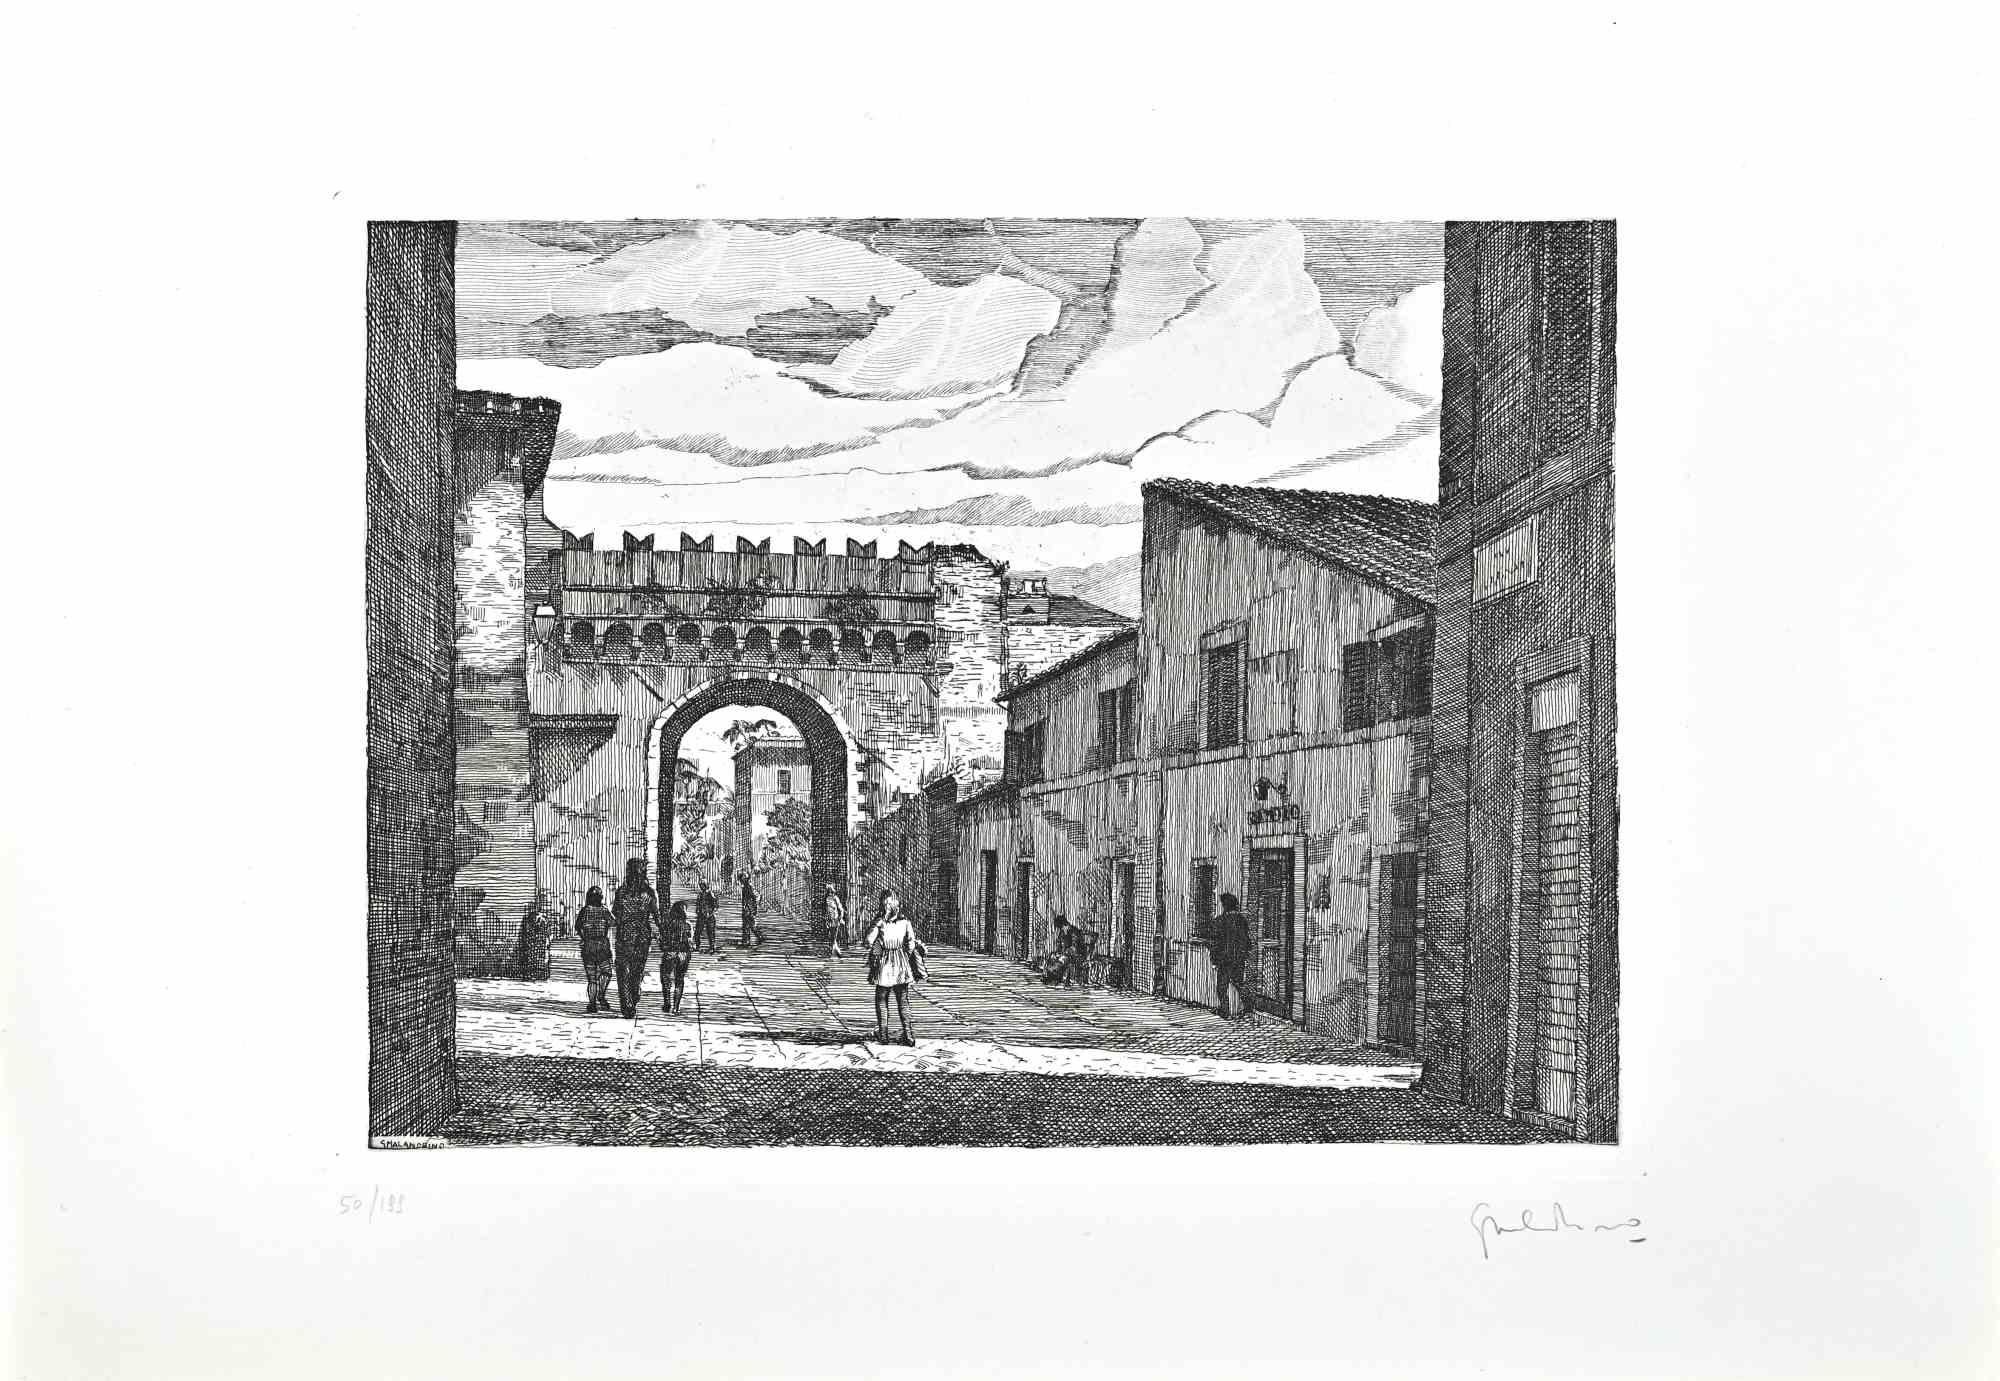 Borgo Pio - Rom ist ein Originalkunstwerk von Giuseppe Malandrino.

Originaldruck in Ätztechnik.

Vom Künstler in der rechten unteren Ecke mit Bleistift handsigniert.

Nummerierte Ausgabe Nr. 50/199 in der unteren linken Ecke.

Gute Bedingungen.